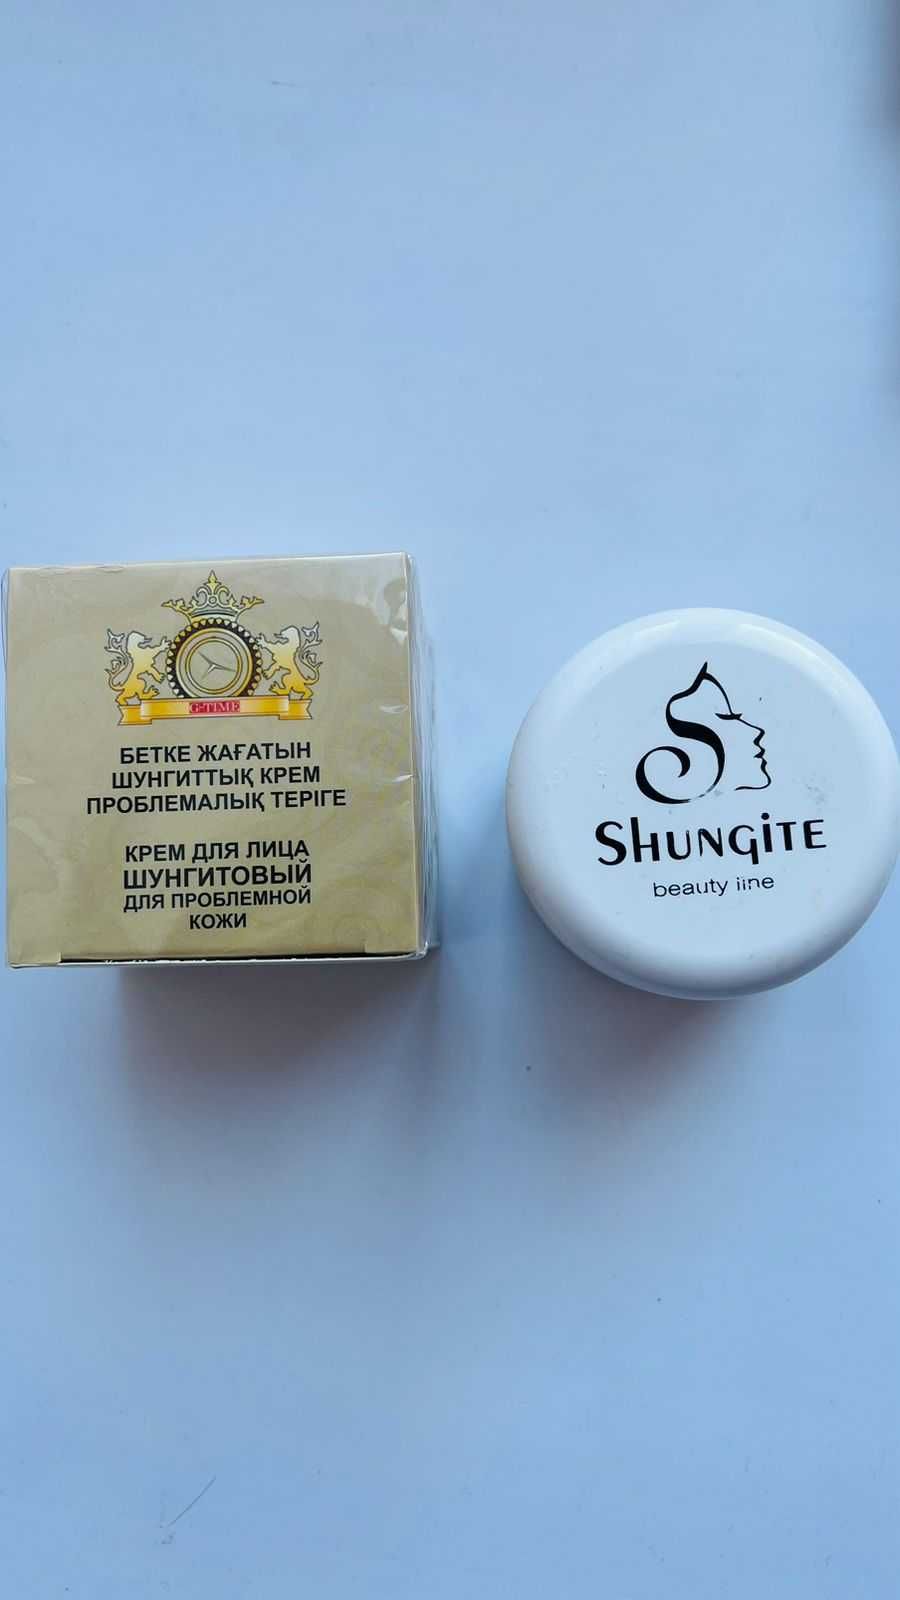 Продается Шунгитовое мыло для лица в коробке 4 шт-5000 тенге